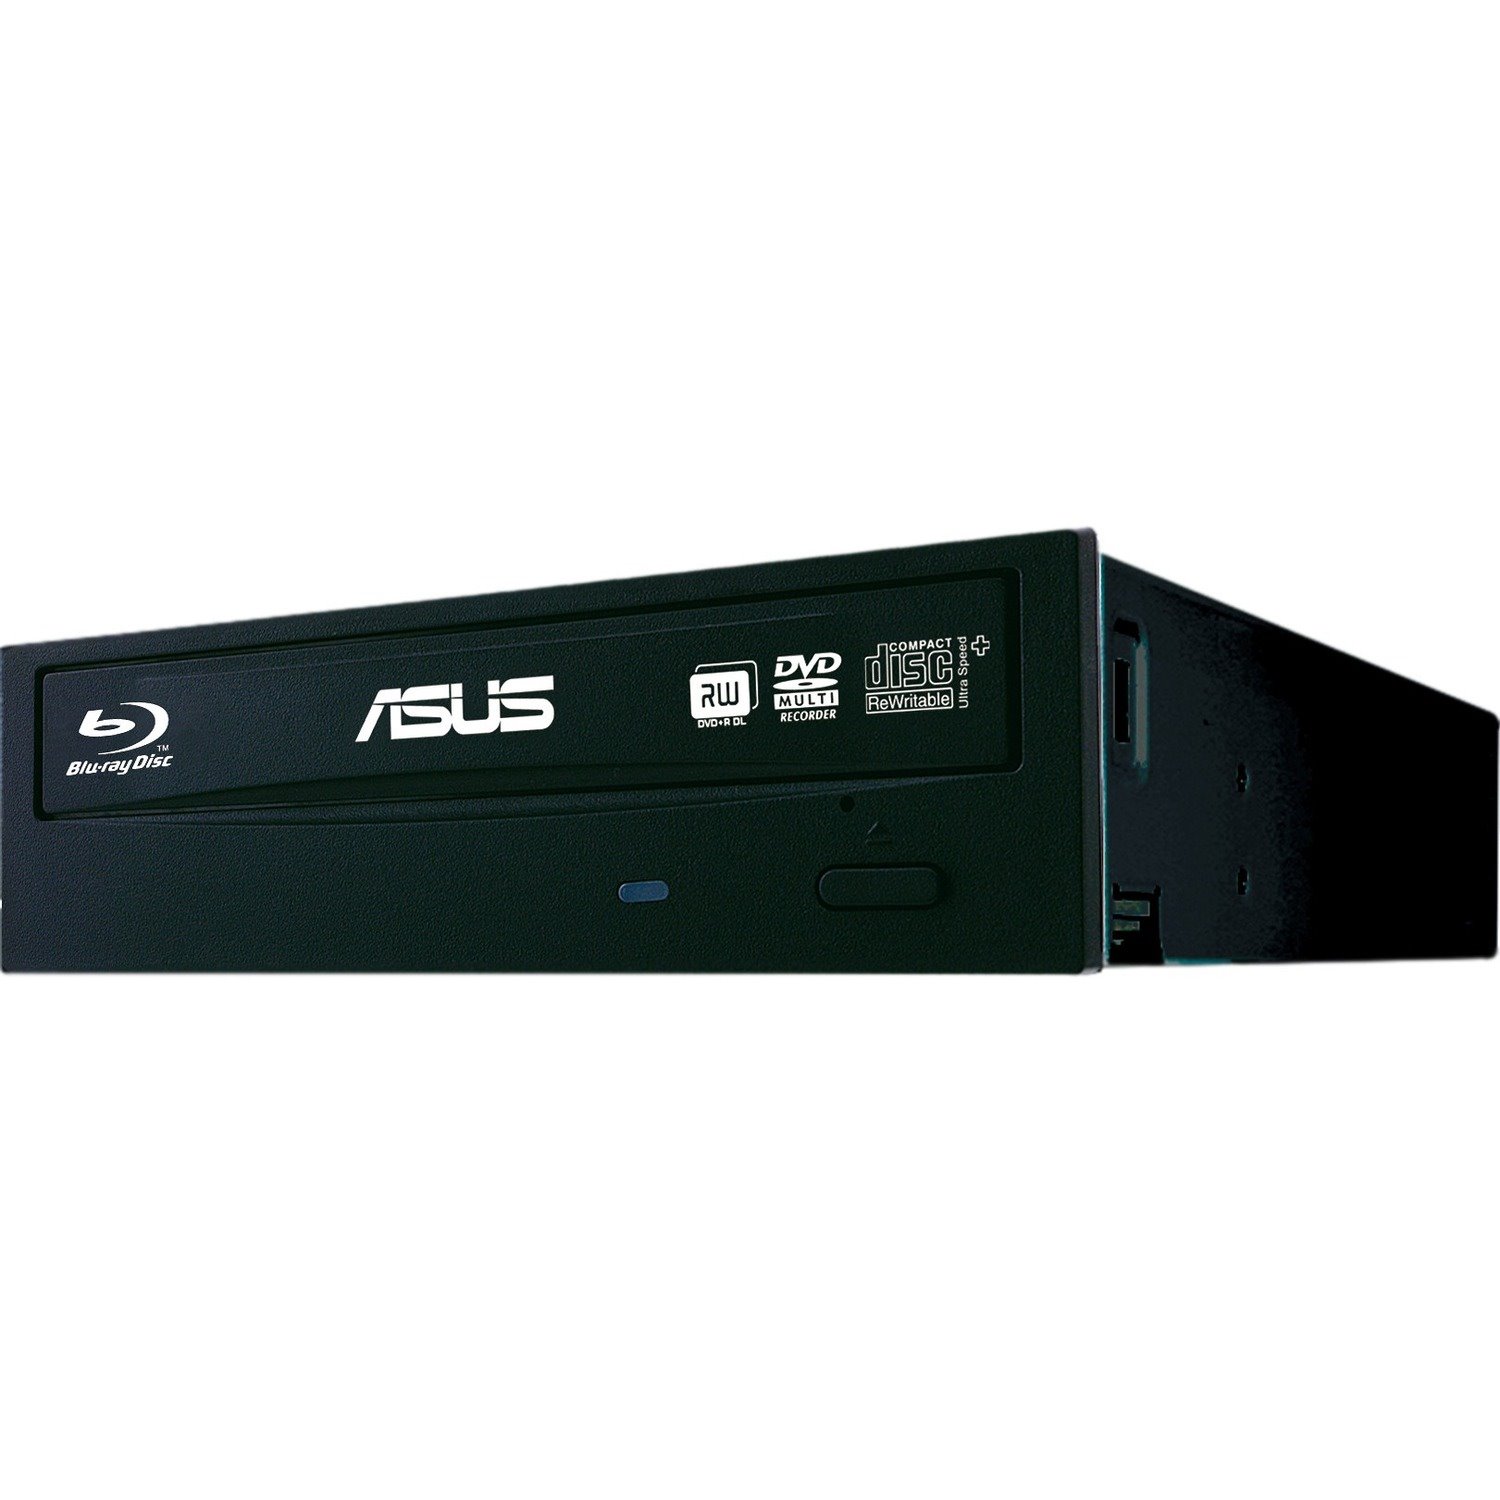 Asus BC-12D2HT Blu-ray Reader/DVD-Writer - Internal - Retail Pack - Black